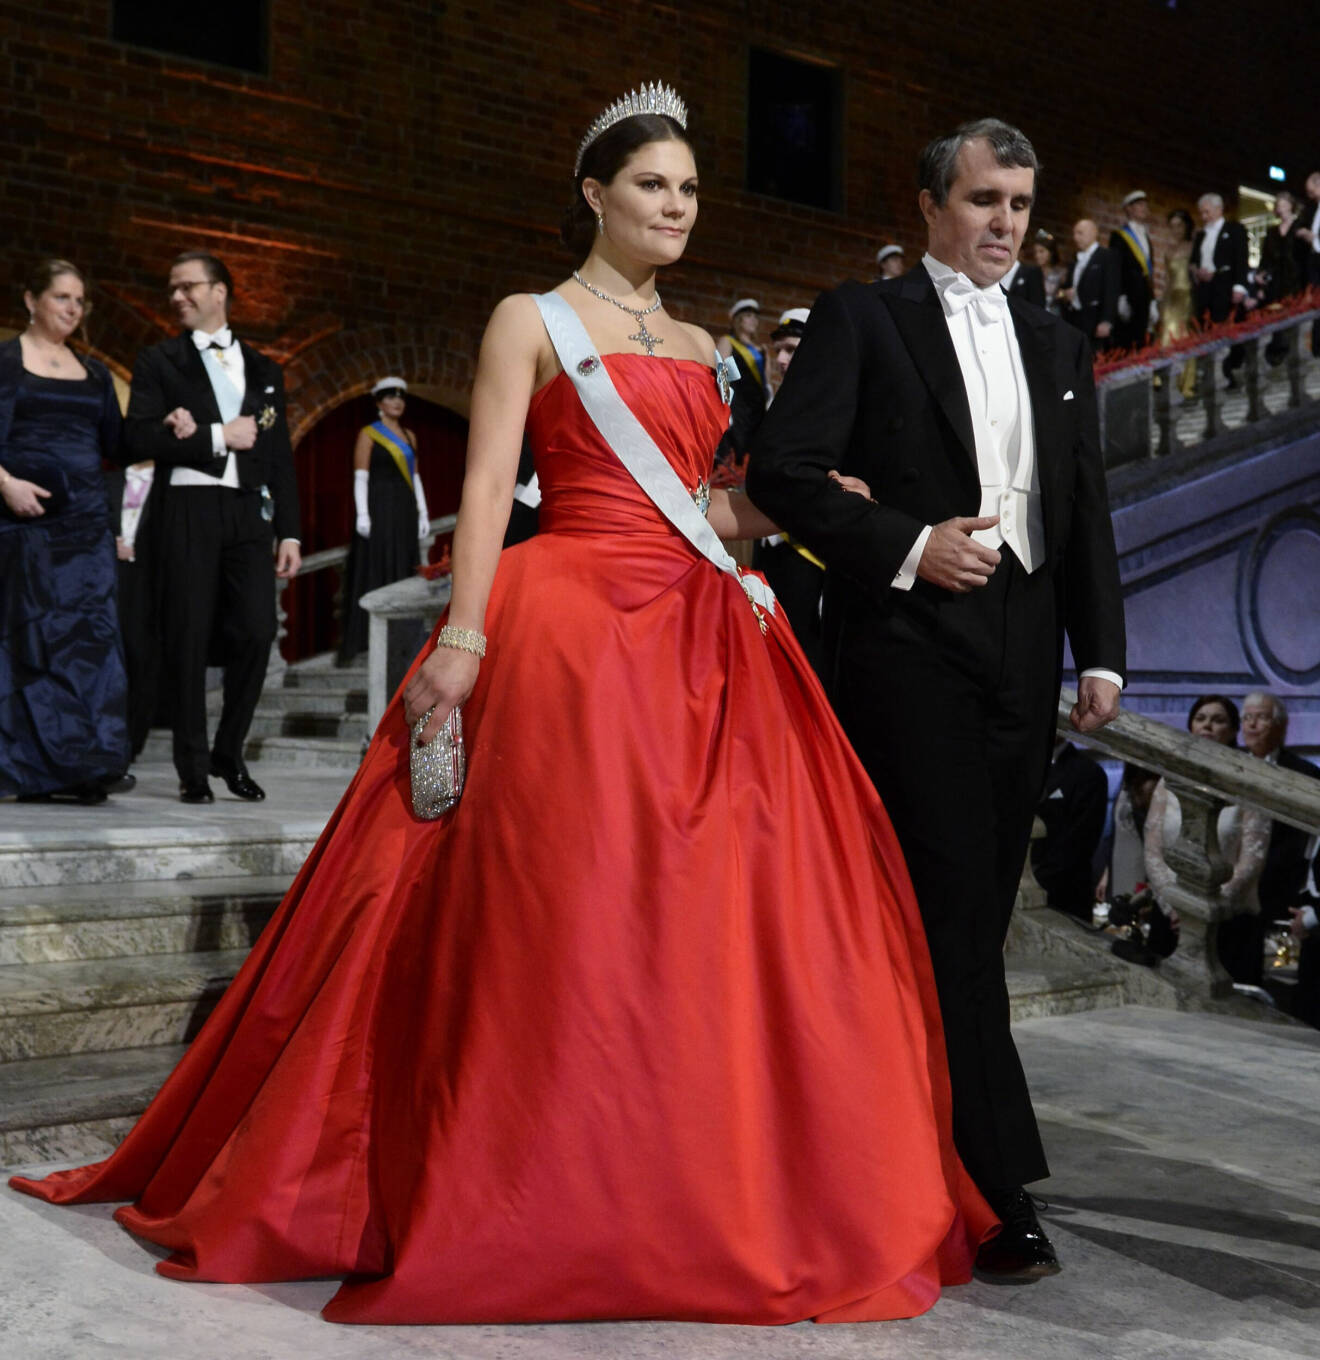 Kronprinsessan Victoria på Nobel 2014 i röd Nobelklänning från Pär Engsheden